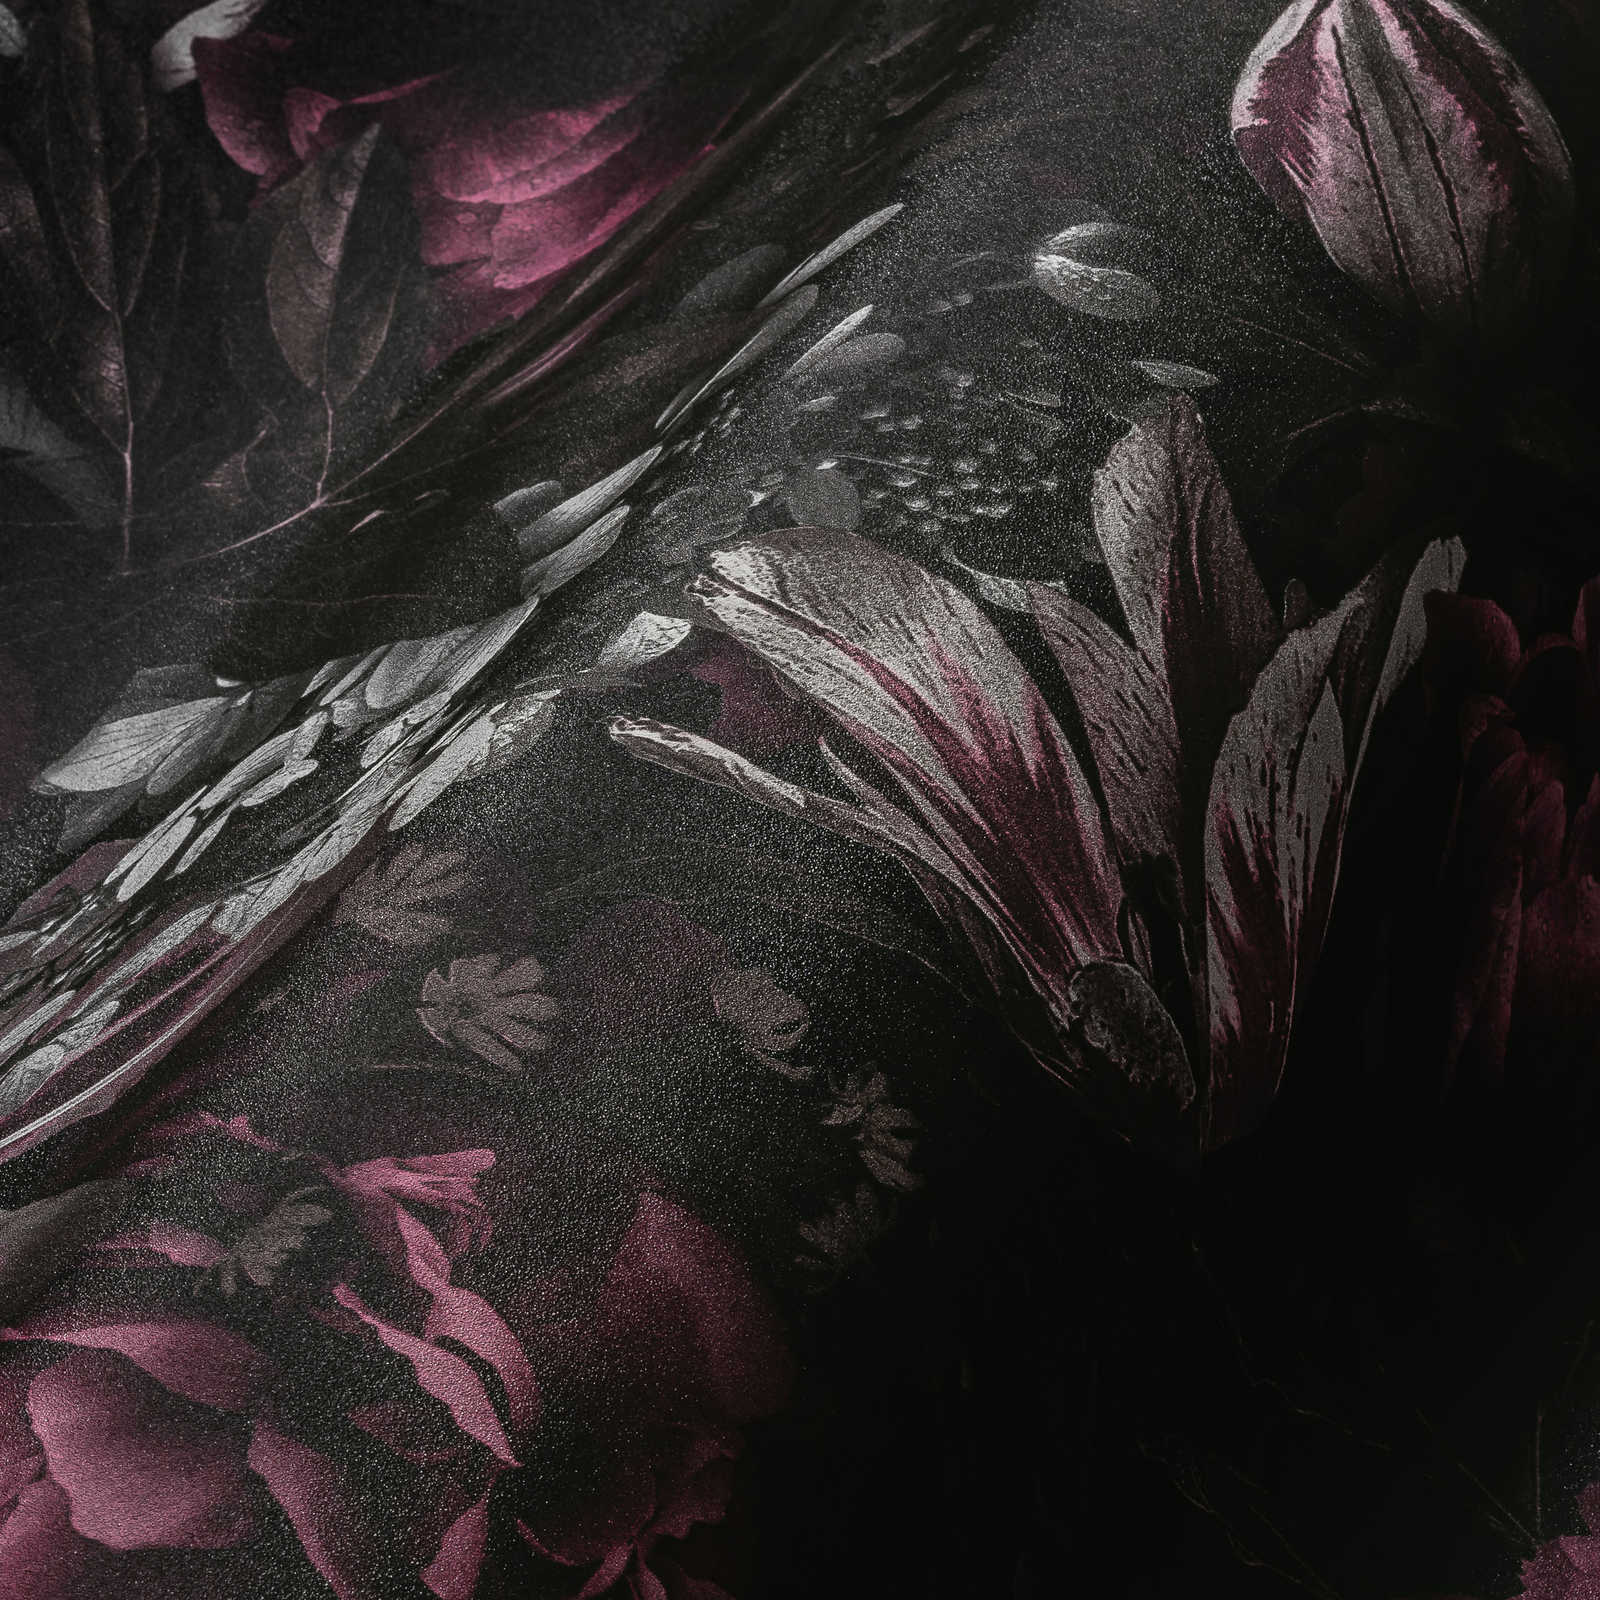             Tapete Rosen & Tulpen im Klassik Stil – Rosa, Grau
        